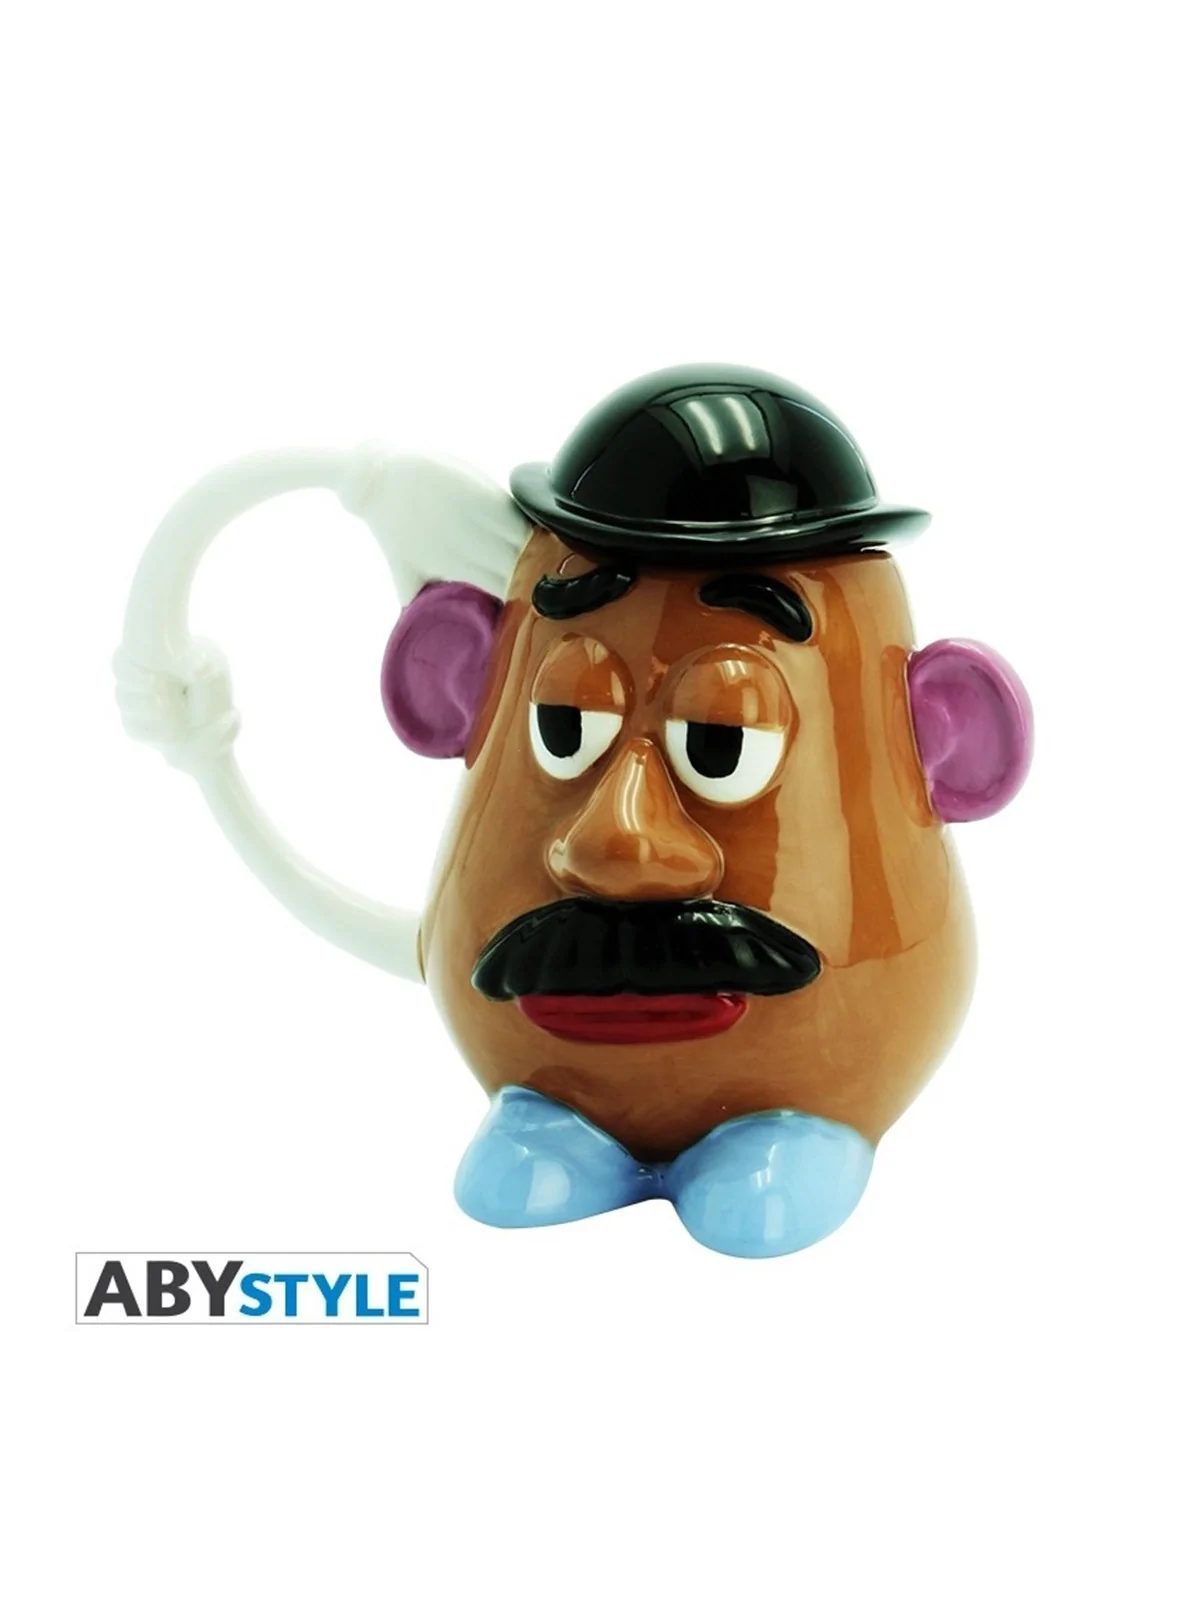 Comprar Taza 3d abystyle disney toy story barato al mejor precio 16,93